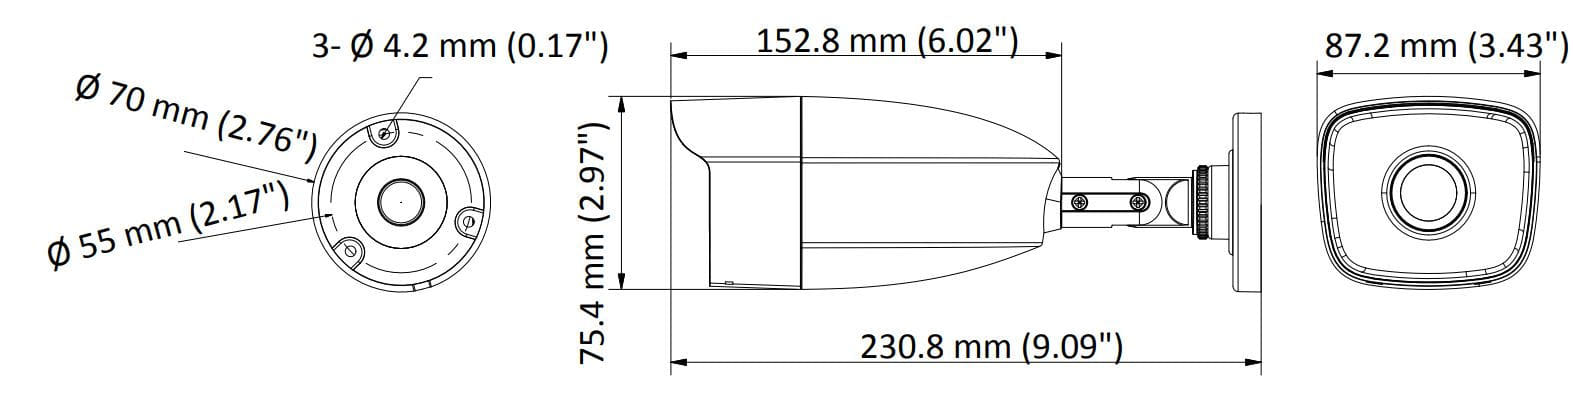 tube-2mp-hdtvi-fixe-schema